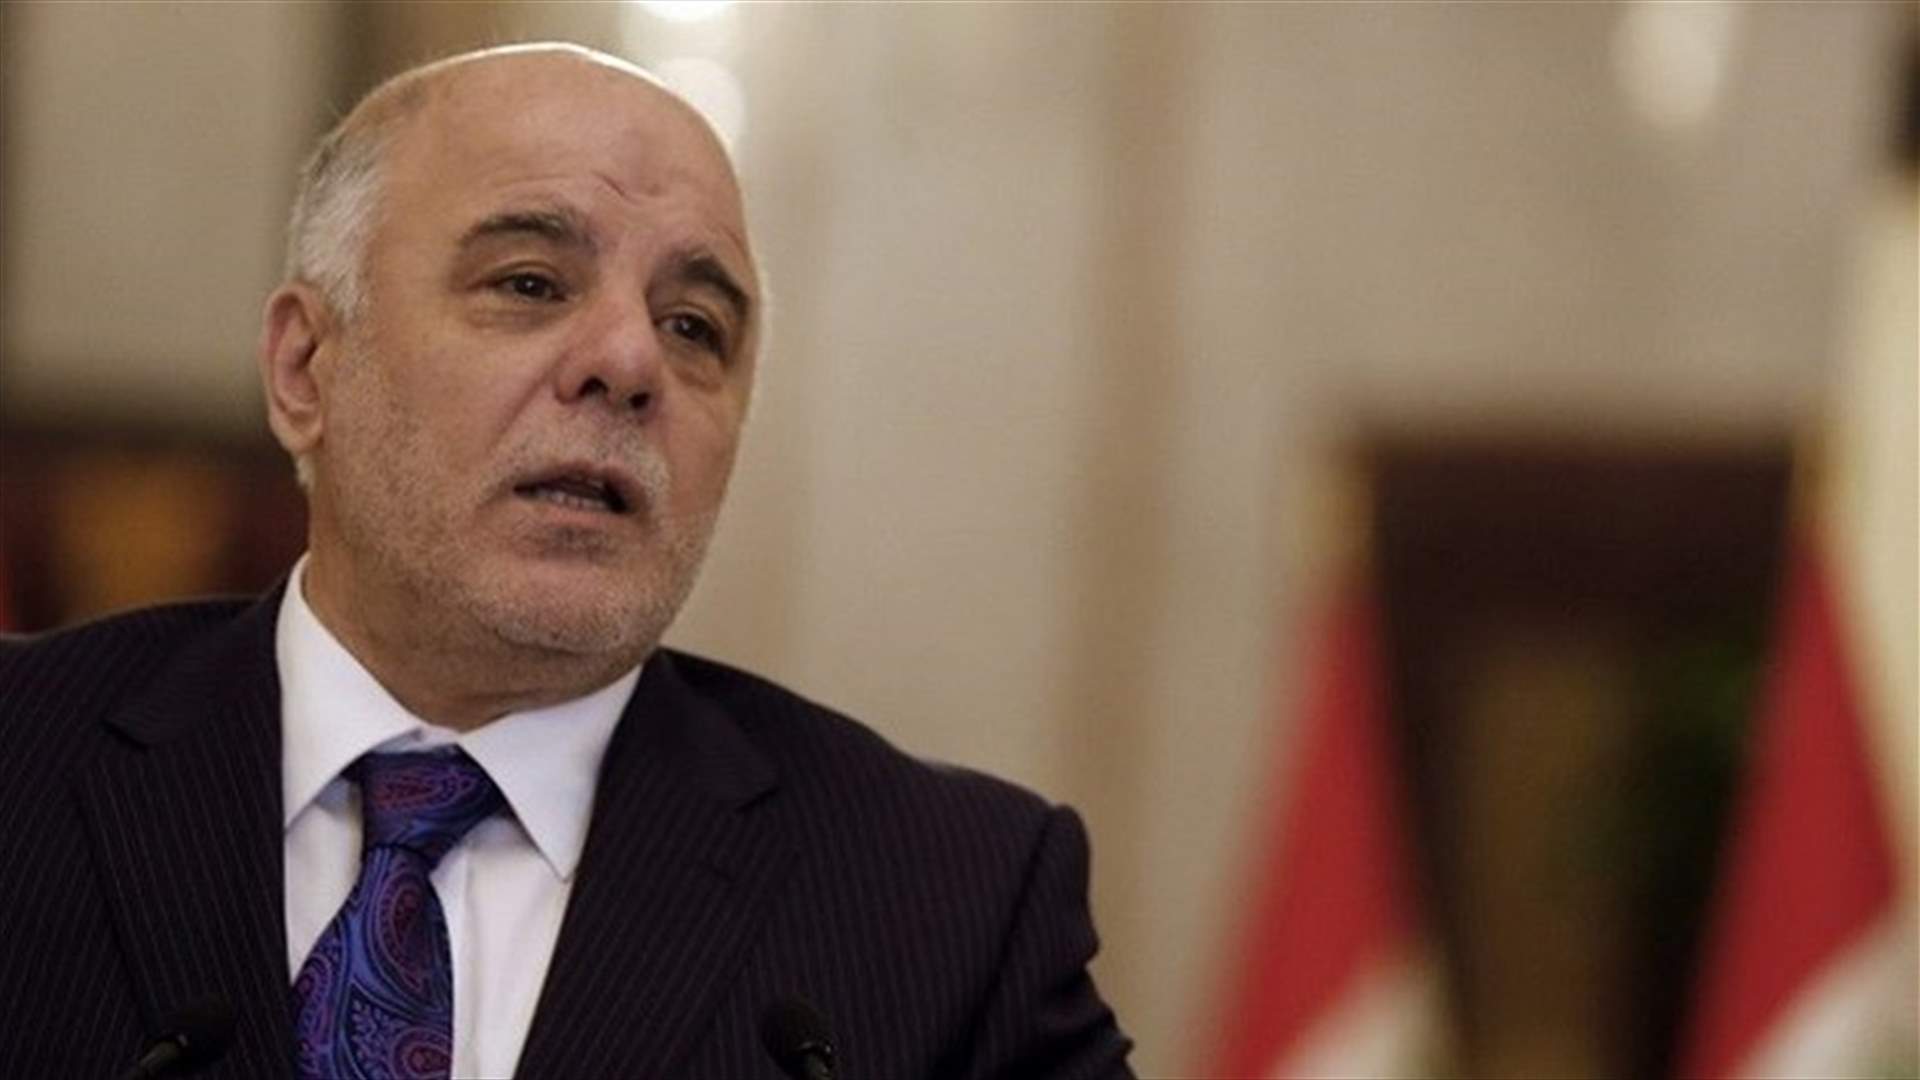 العبادي: العراق لا يريد أن يكون طرفا في صراع إقليمي أو دولي